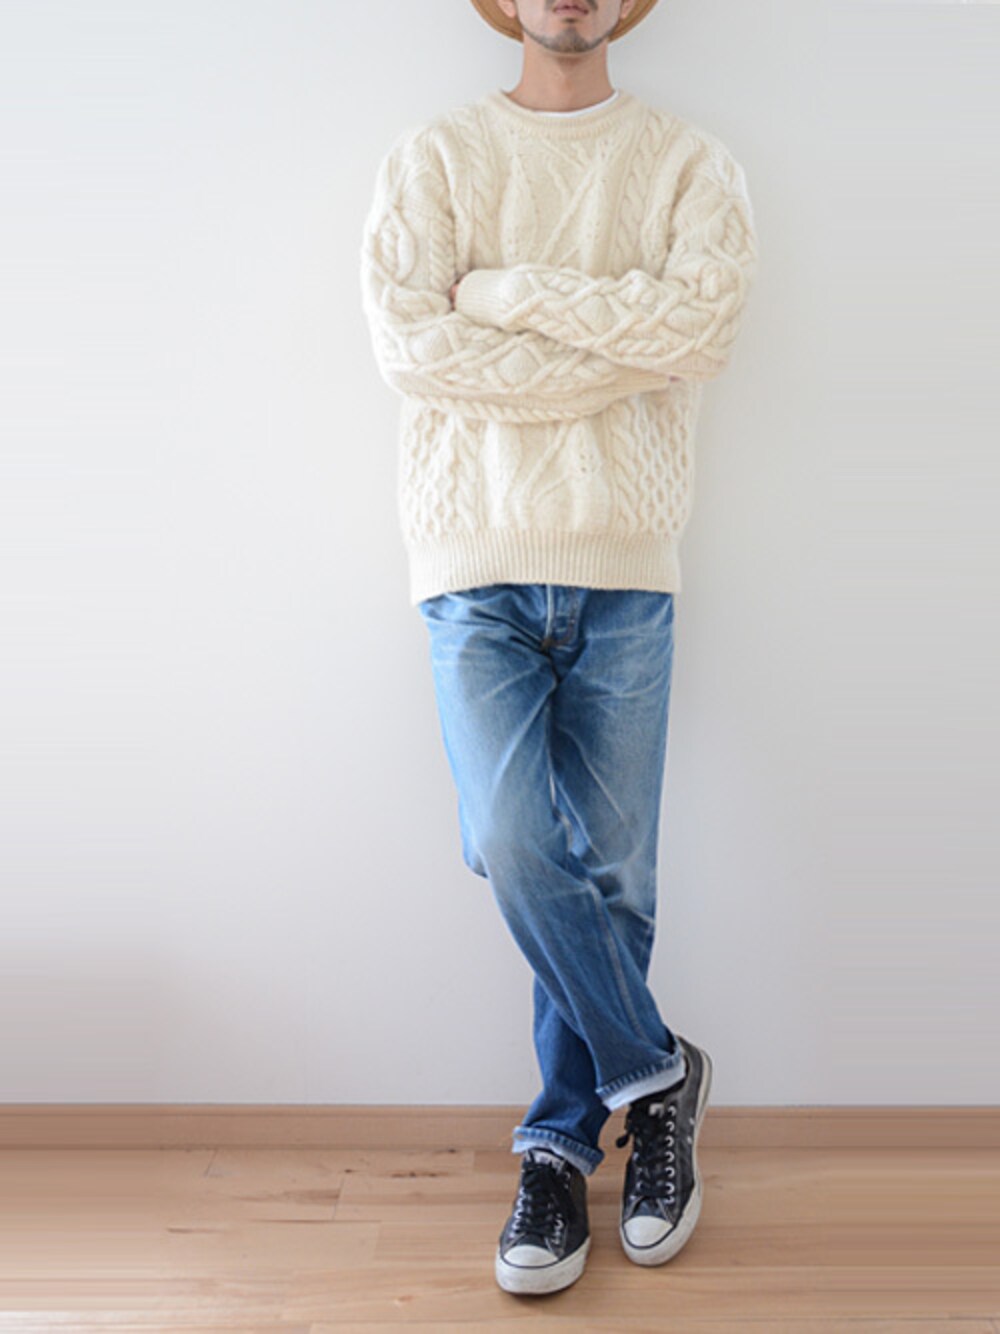 FUNS_FUKUSHIMAさんの「ヴィンテージ フィッシャーマン セーター ウール アラン編み（VINTAGE）」を使ったコーディネート